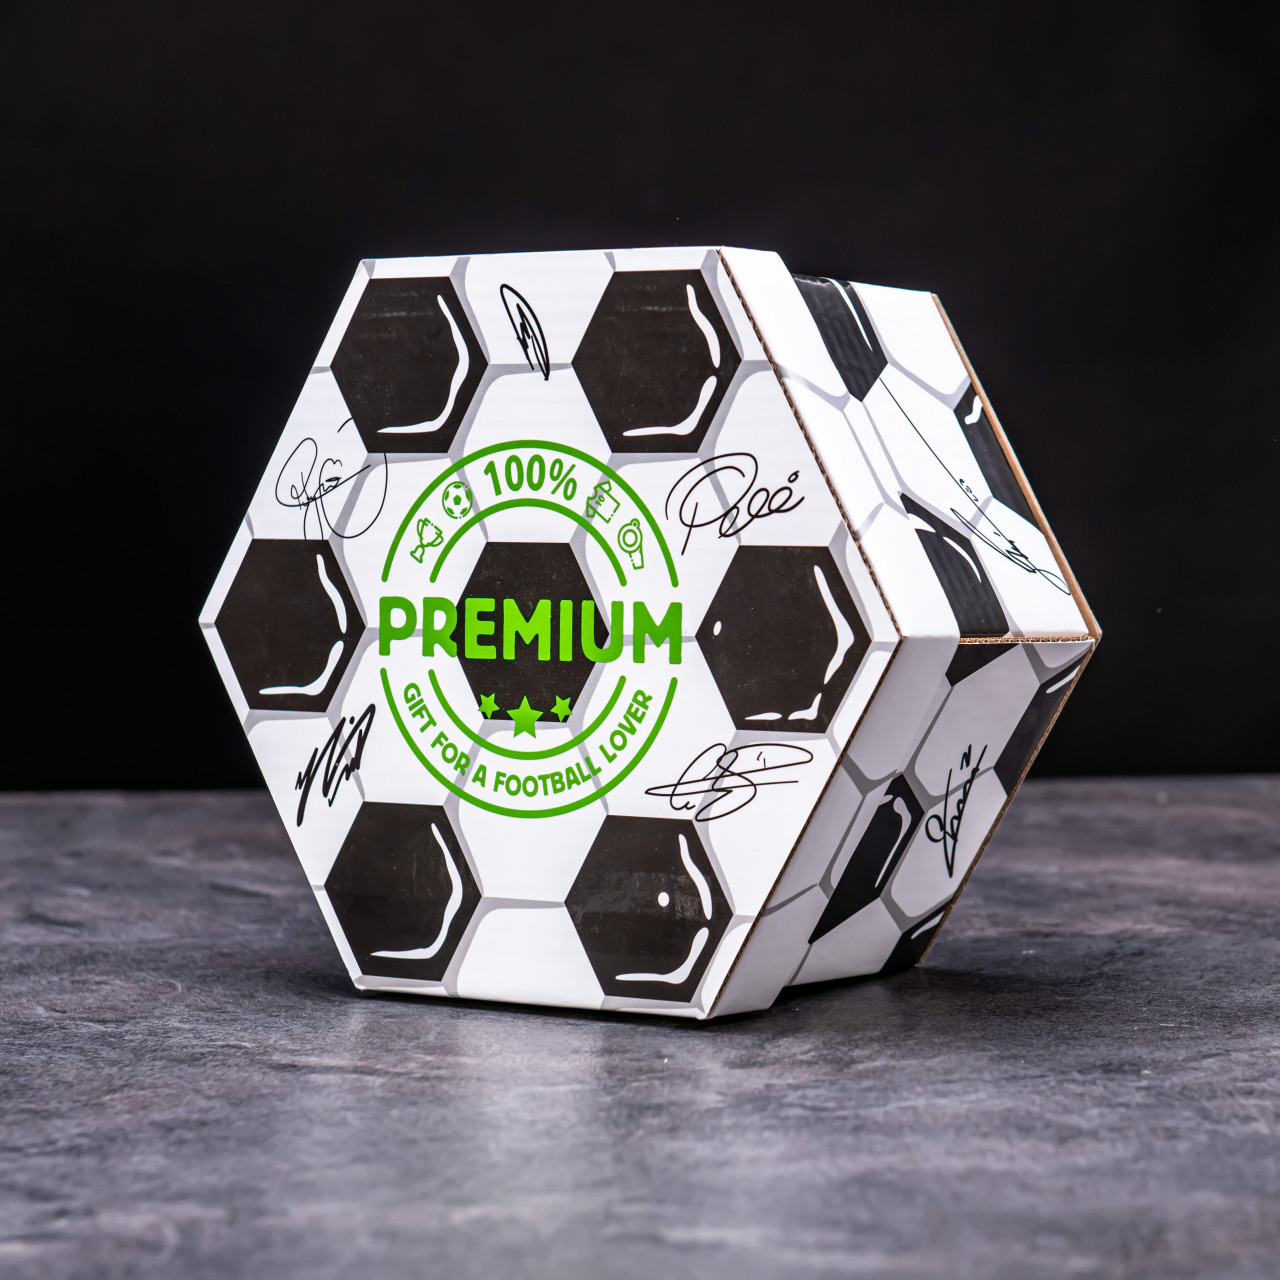 Hexagon plný sladkostí XXL - Fotbalový